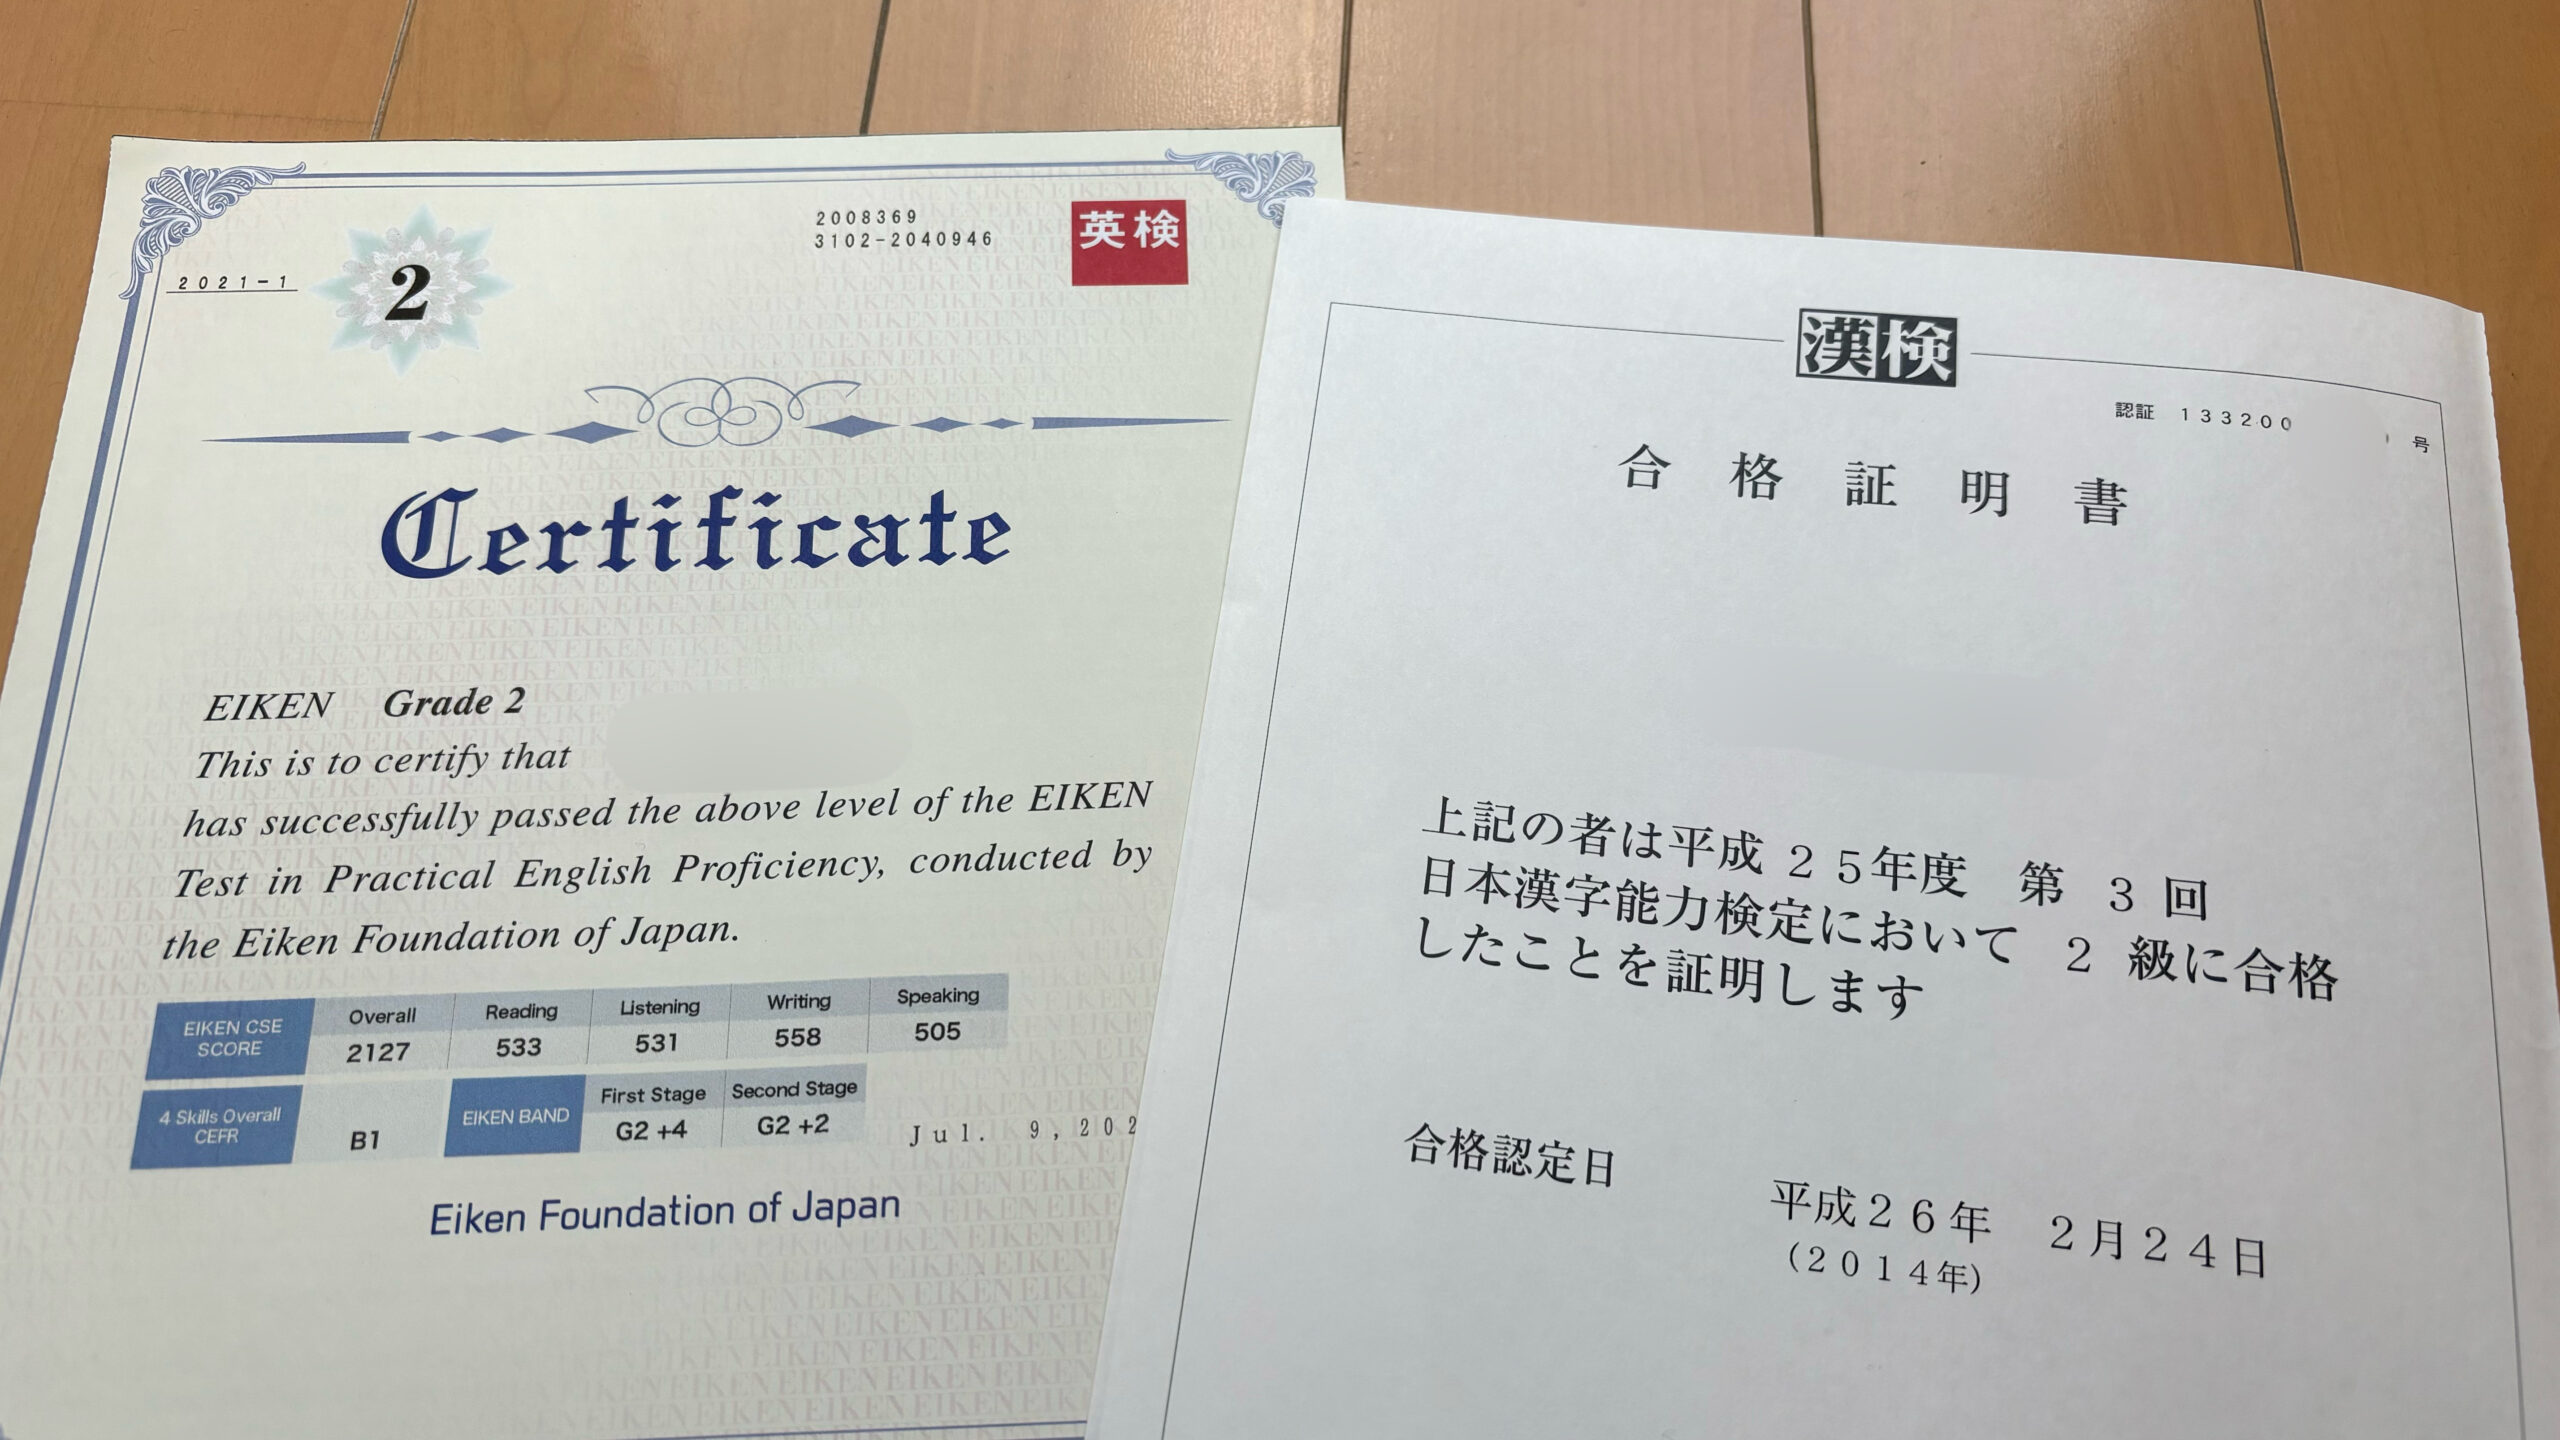 漢字検定と英語検定の合格証明書